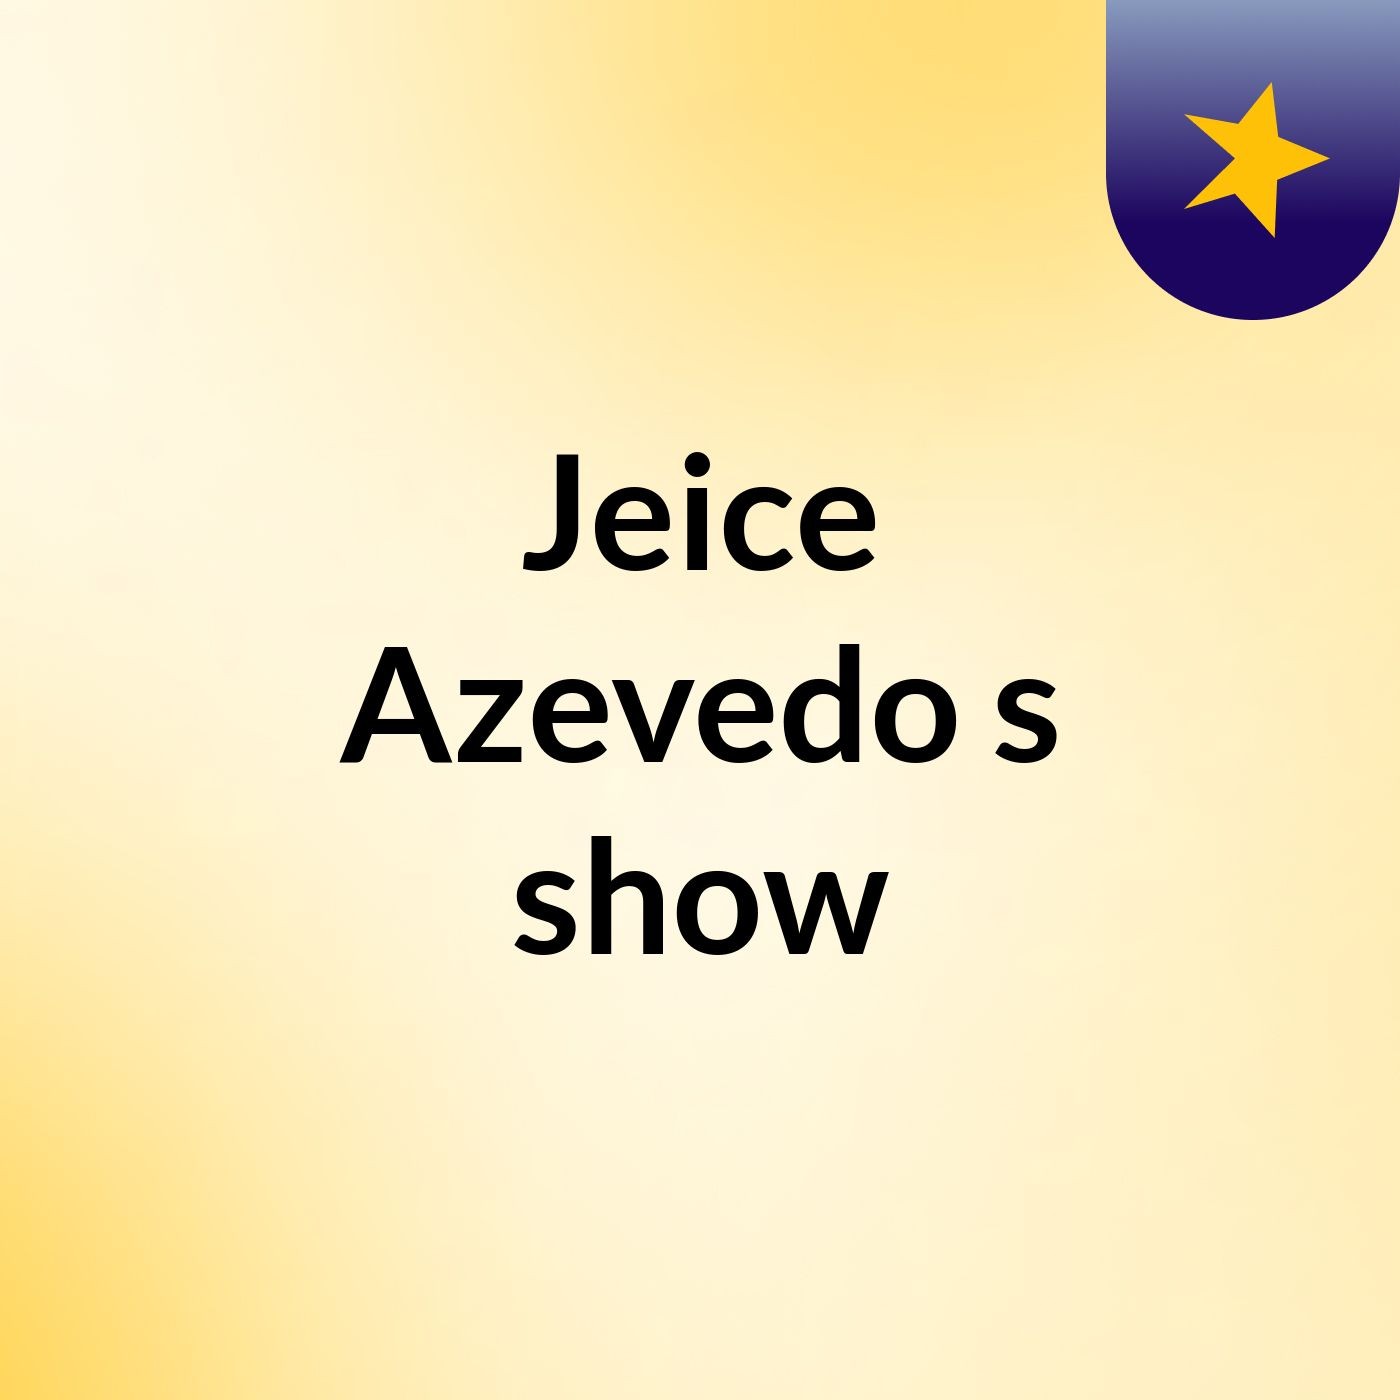 Jeice Azevedo's show